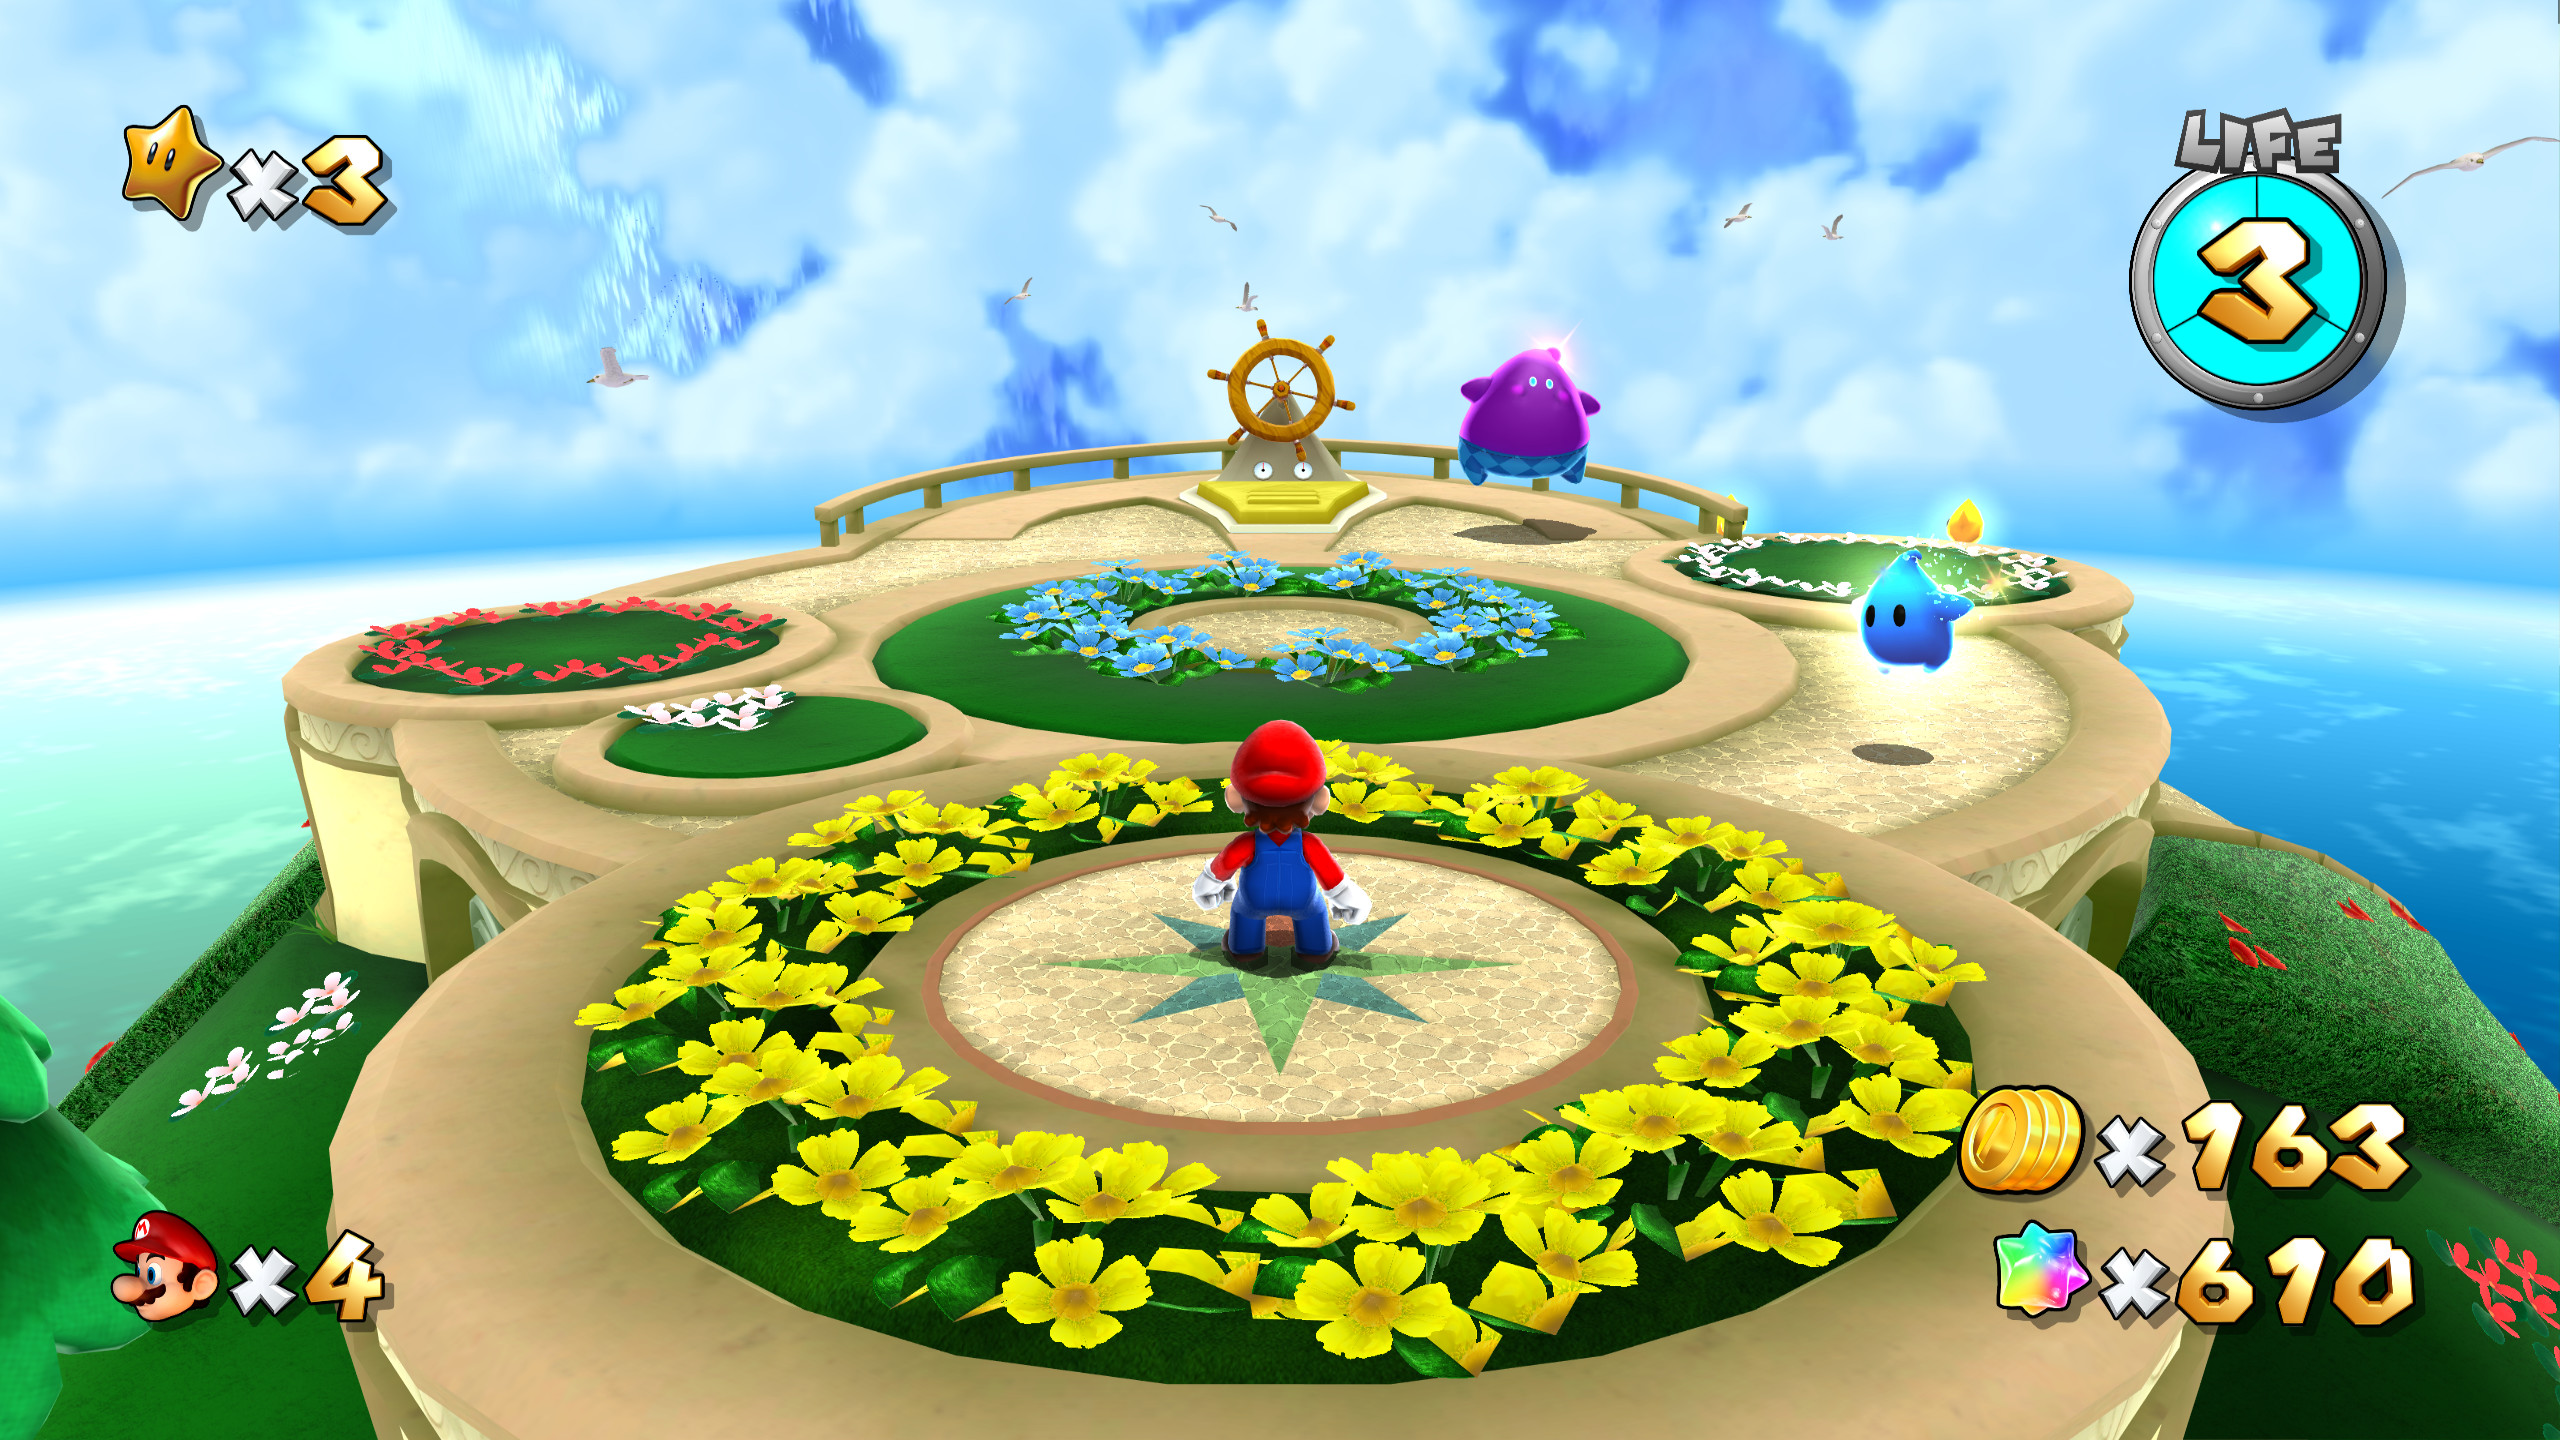 2560x1440 ... Super Mario Galaxy 2 | Wii | Games | Nintendo ...